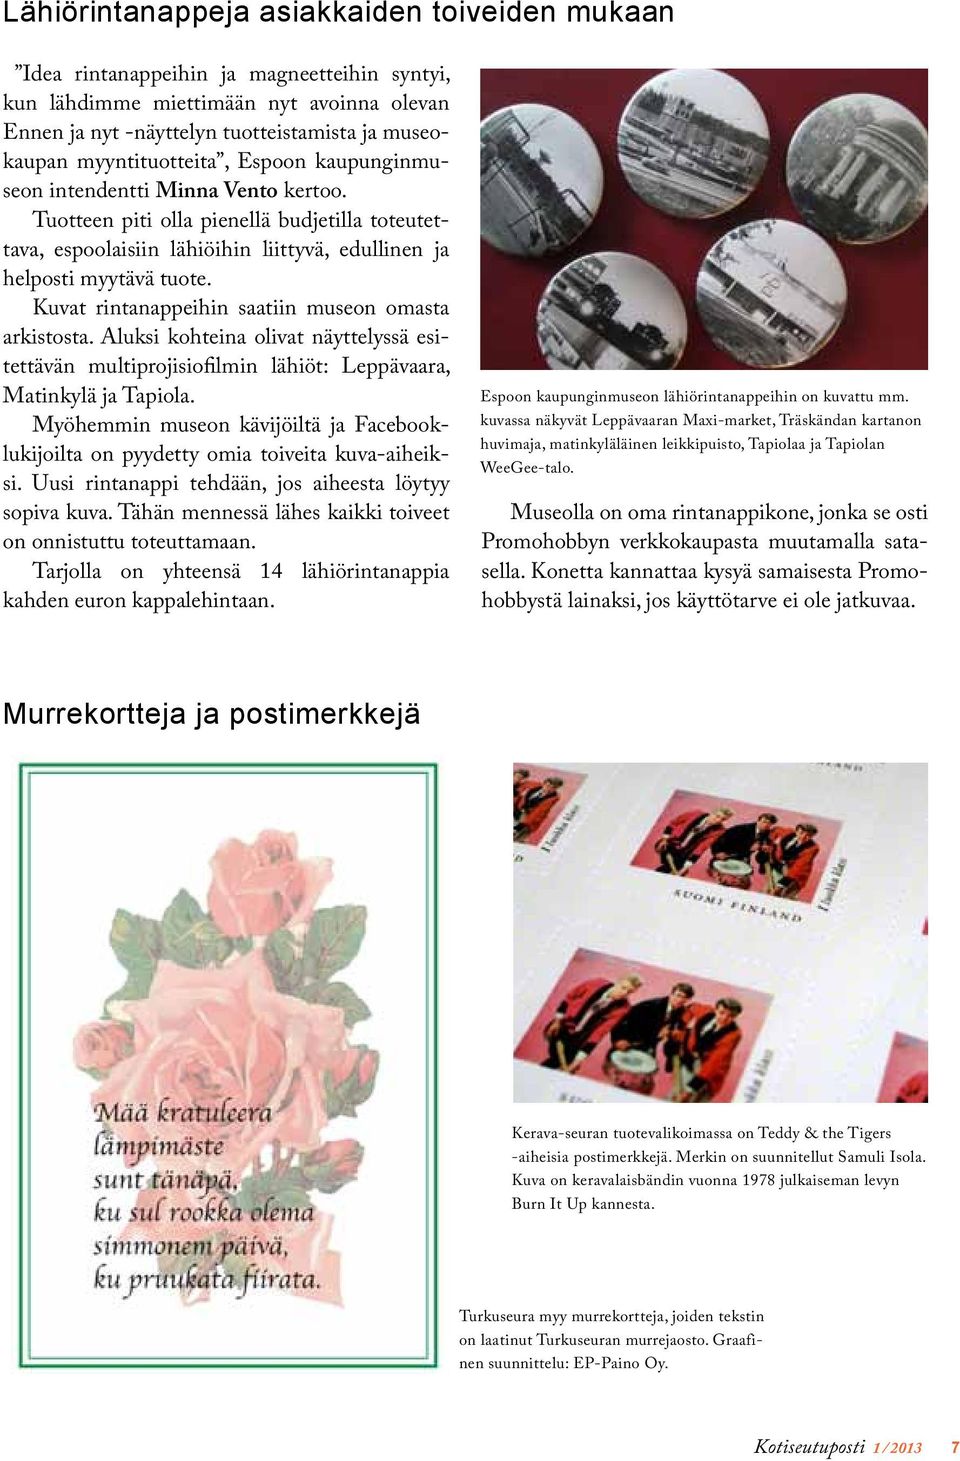 Kuvat rintanappeihin saatiin museon omasta arkistosta. Aluksi kohteina olivat näyttelyssä esitettävän multiprojisiofilmin lähiöt: Leppävaara, Matinkylä ja Tapiola.